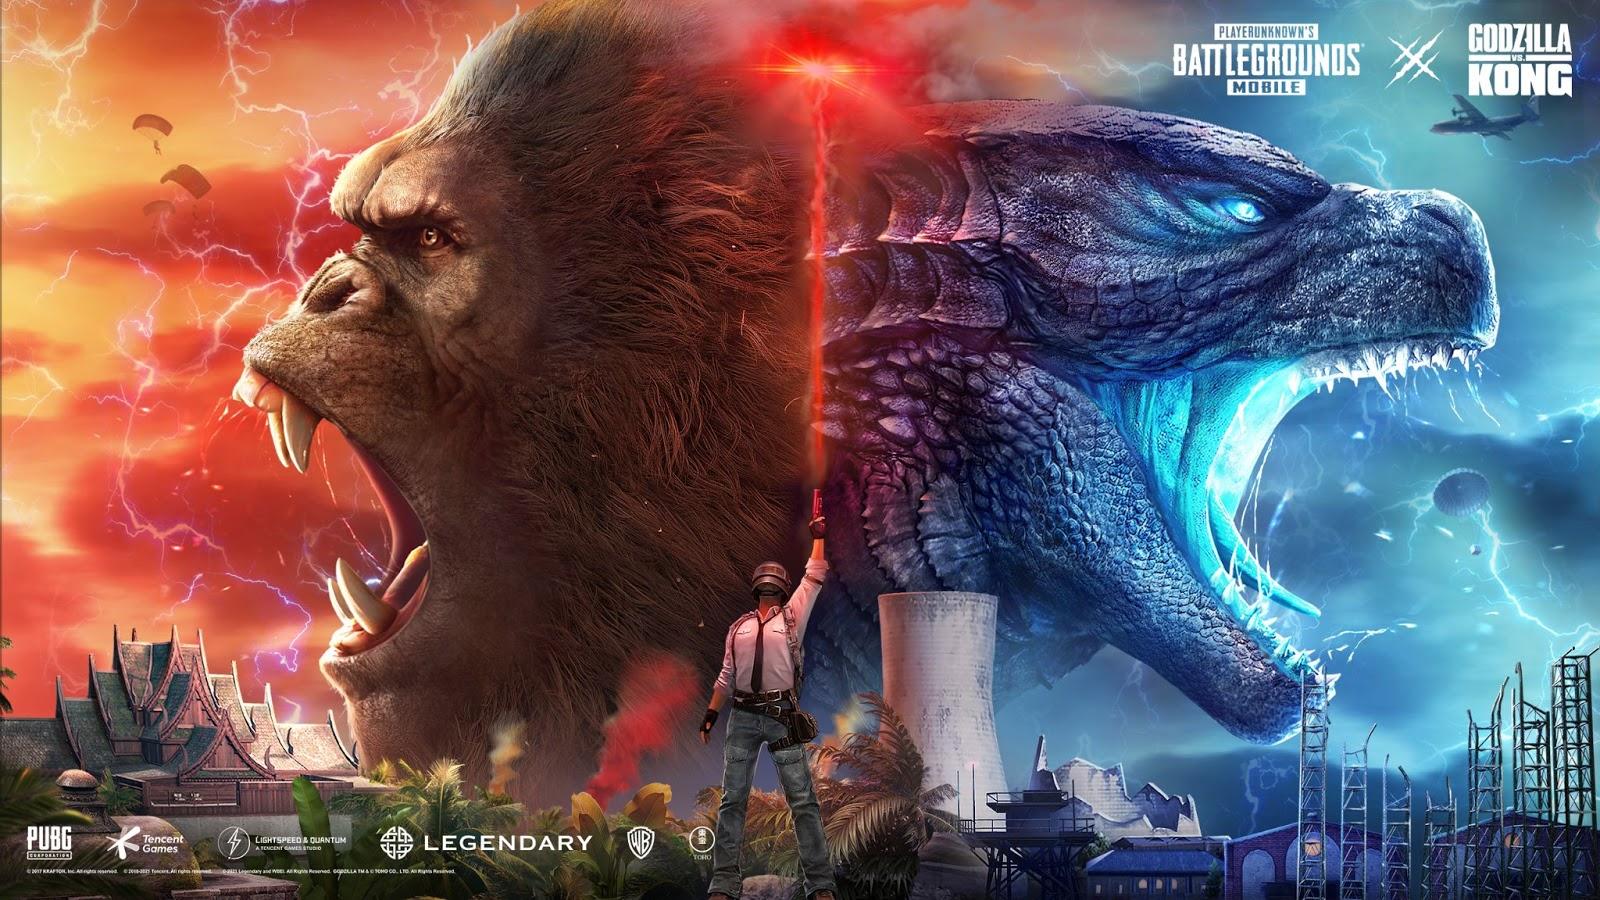 Nova atualização de PUBG Mobile traz Godzilla e Kong